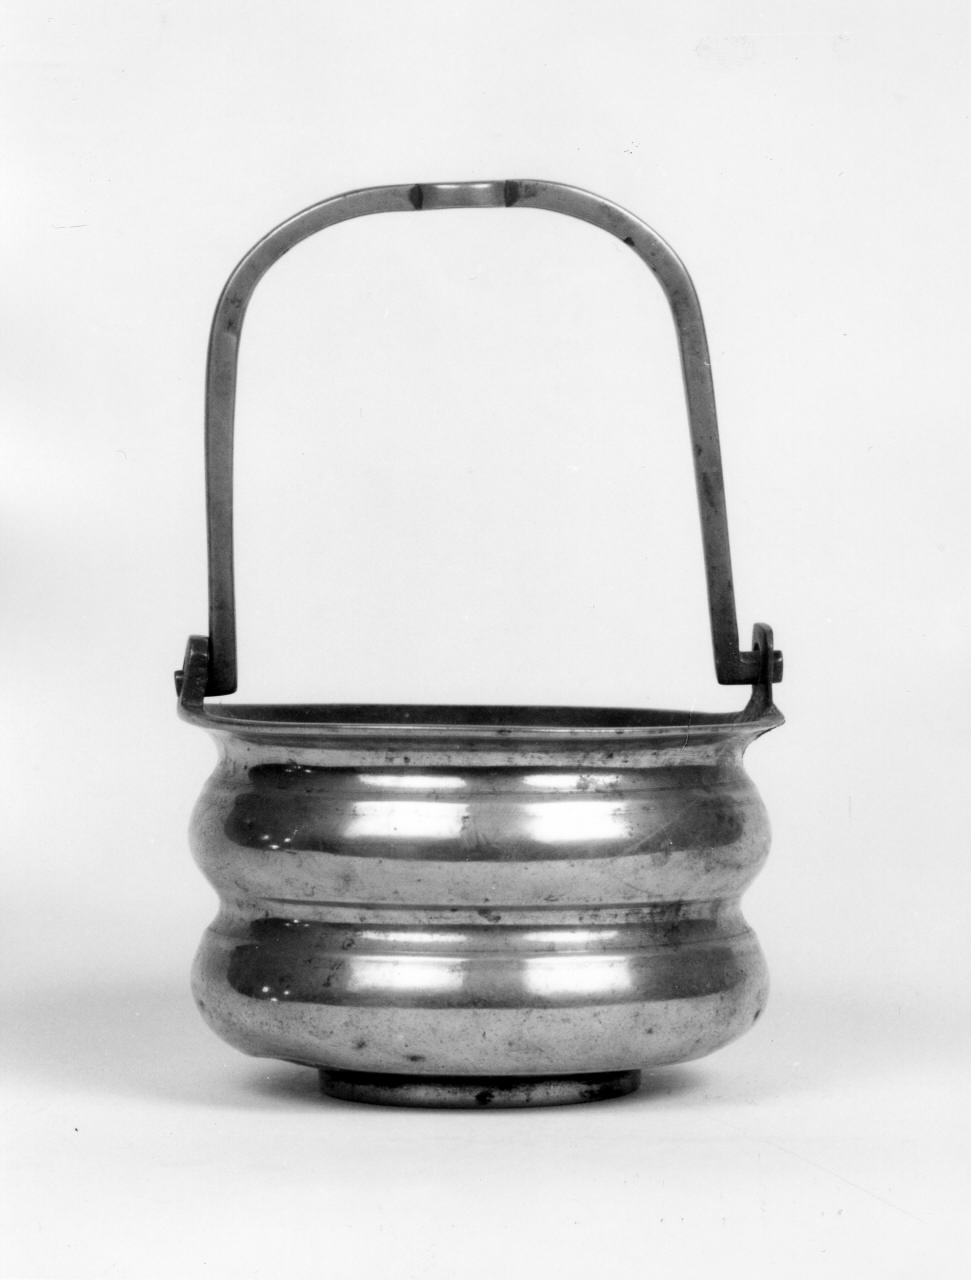 secchiello per l'acqua benedetta - produzione toscana (sec. XVII)